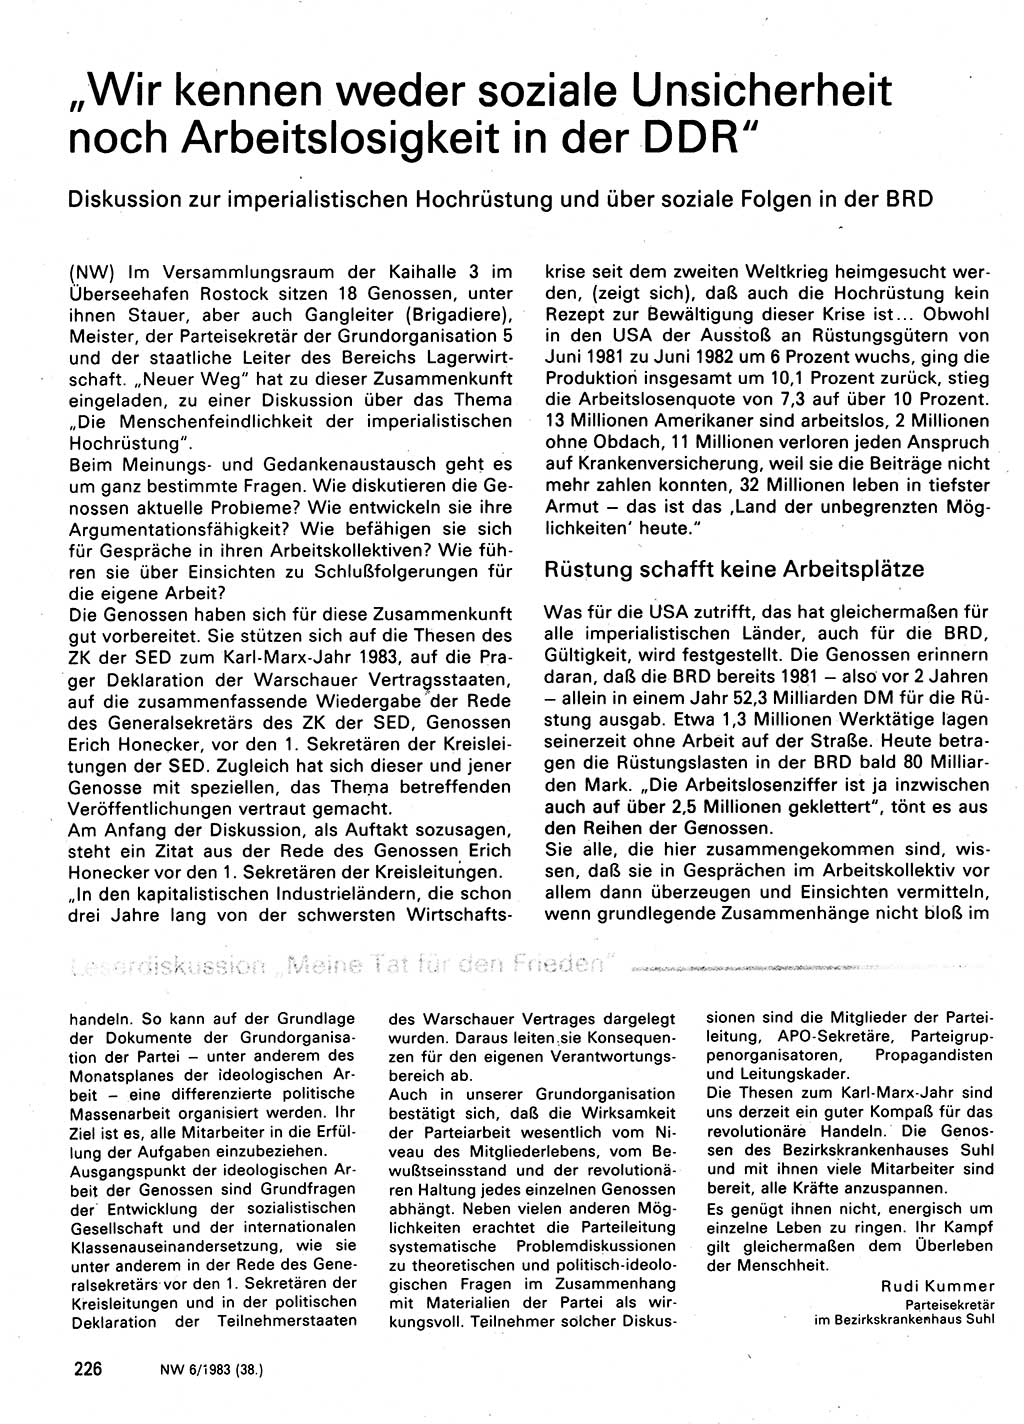 Neuer Weg (NW), Organ des Zentralkomitees (ZK) der SED (Sozialistische Einheitspartei Deutschlands) für Fragen des Parteilebens, 38. Jahrgang [Deutsche Demokratische Republik (DDR)] 1983, Seite 226 (NW ZK SED DDR 1983, S. 226)